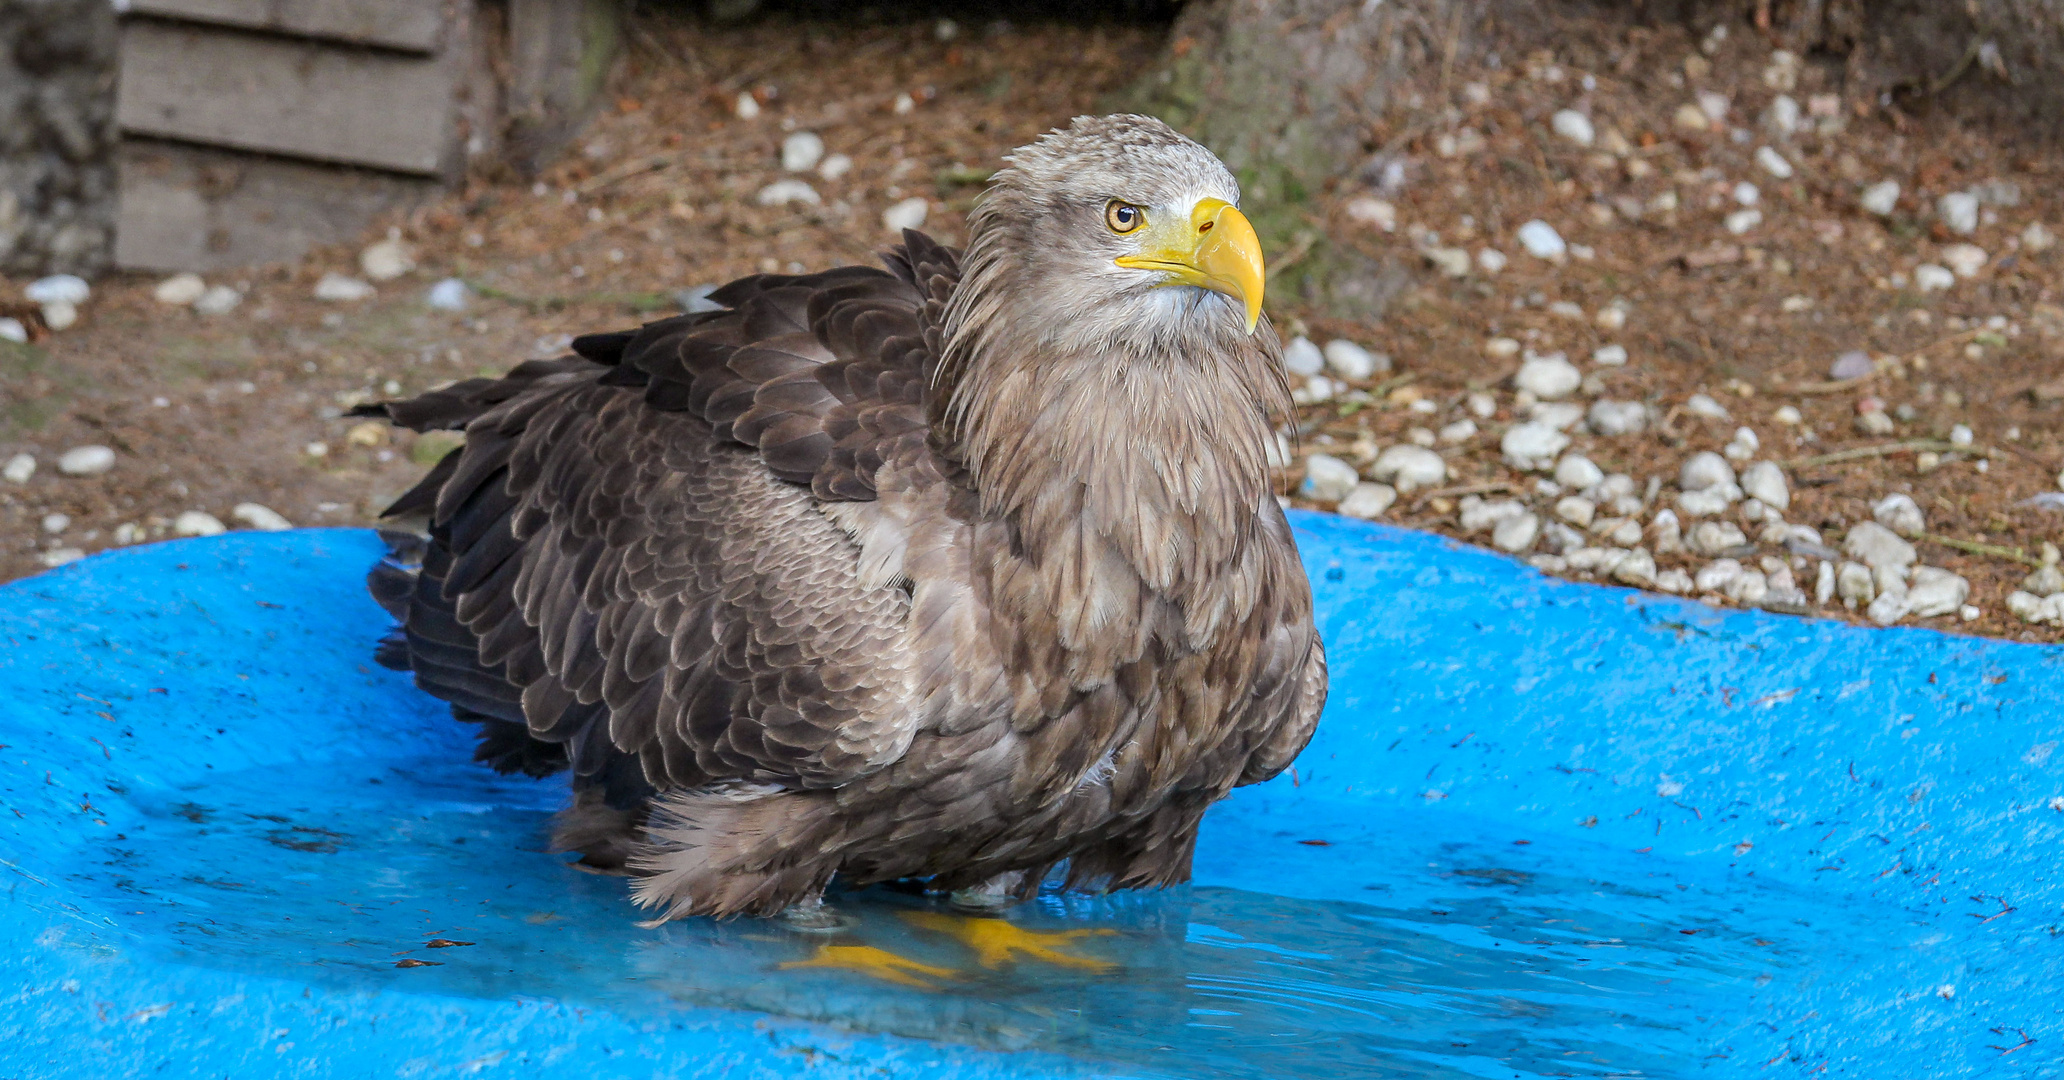  Ein Europäischer Seeadler beim baden.